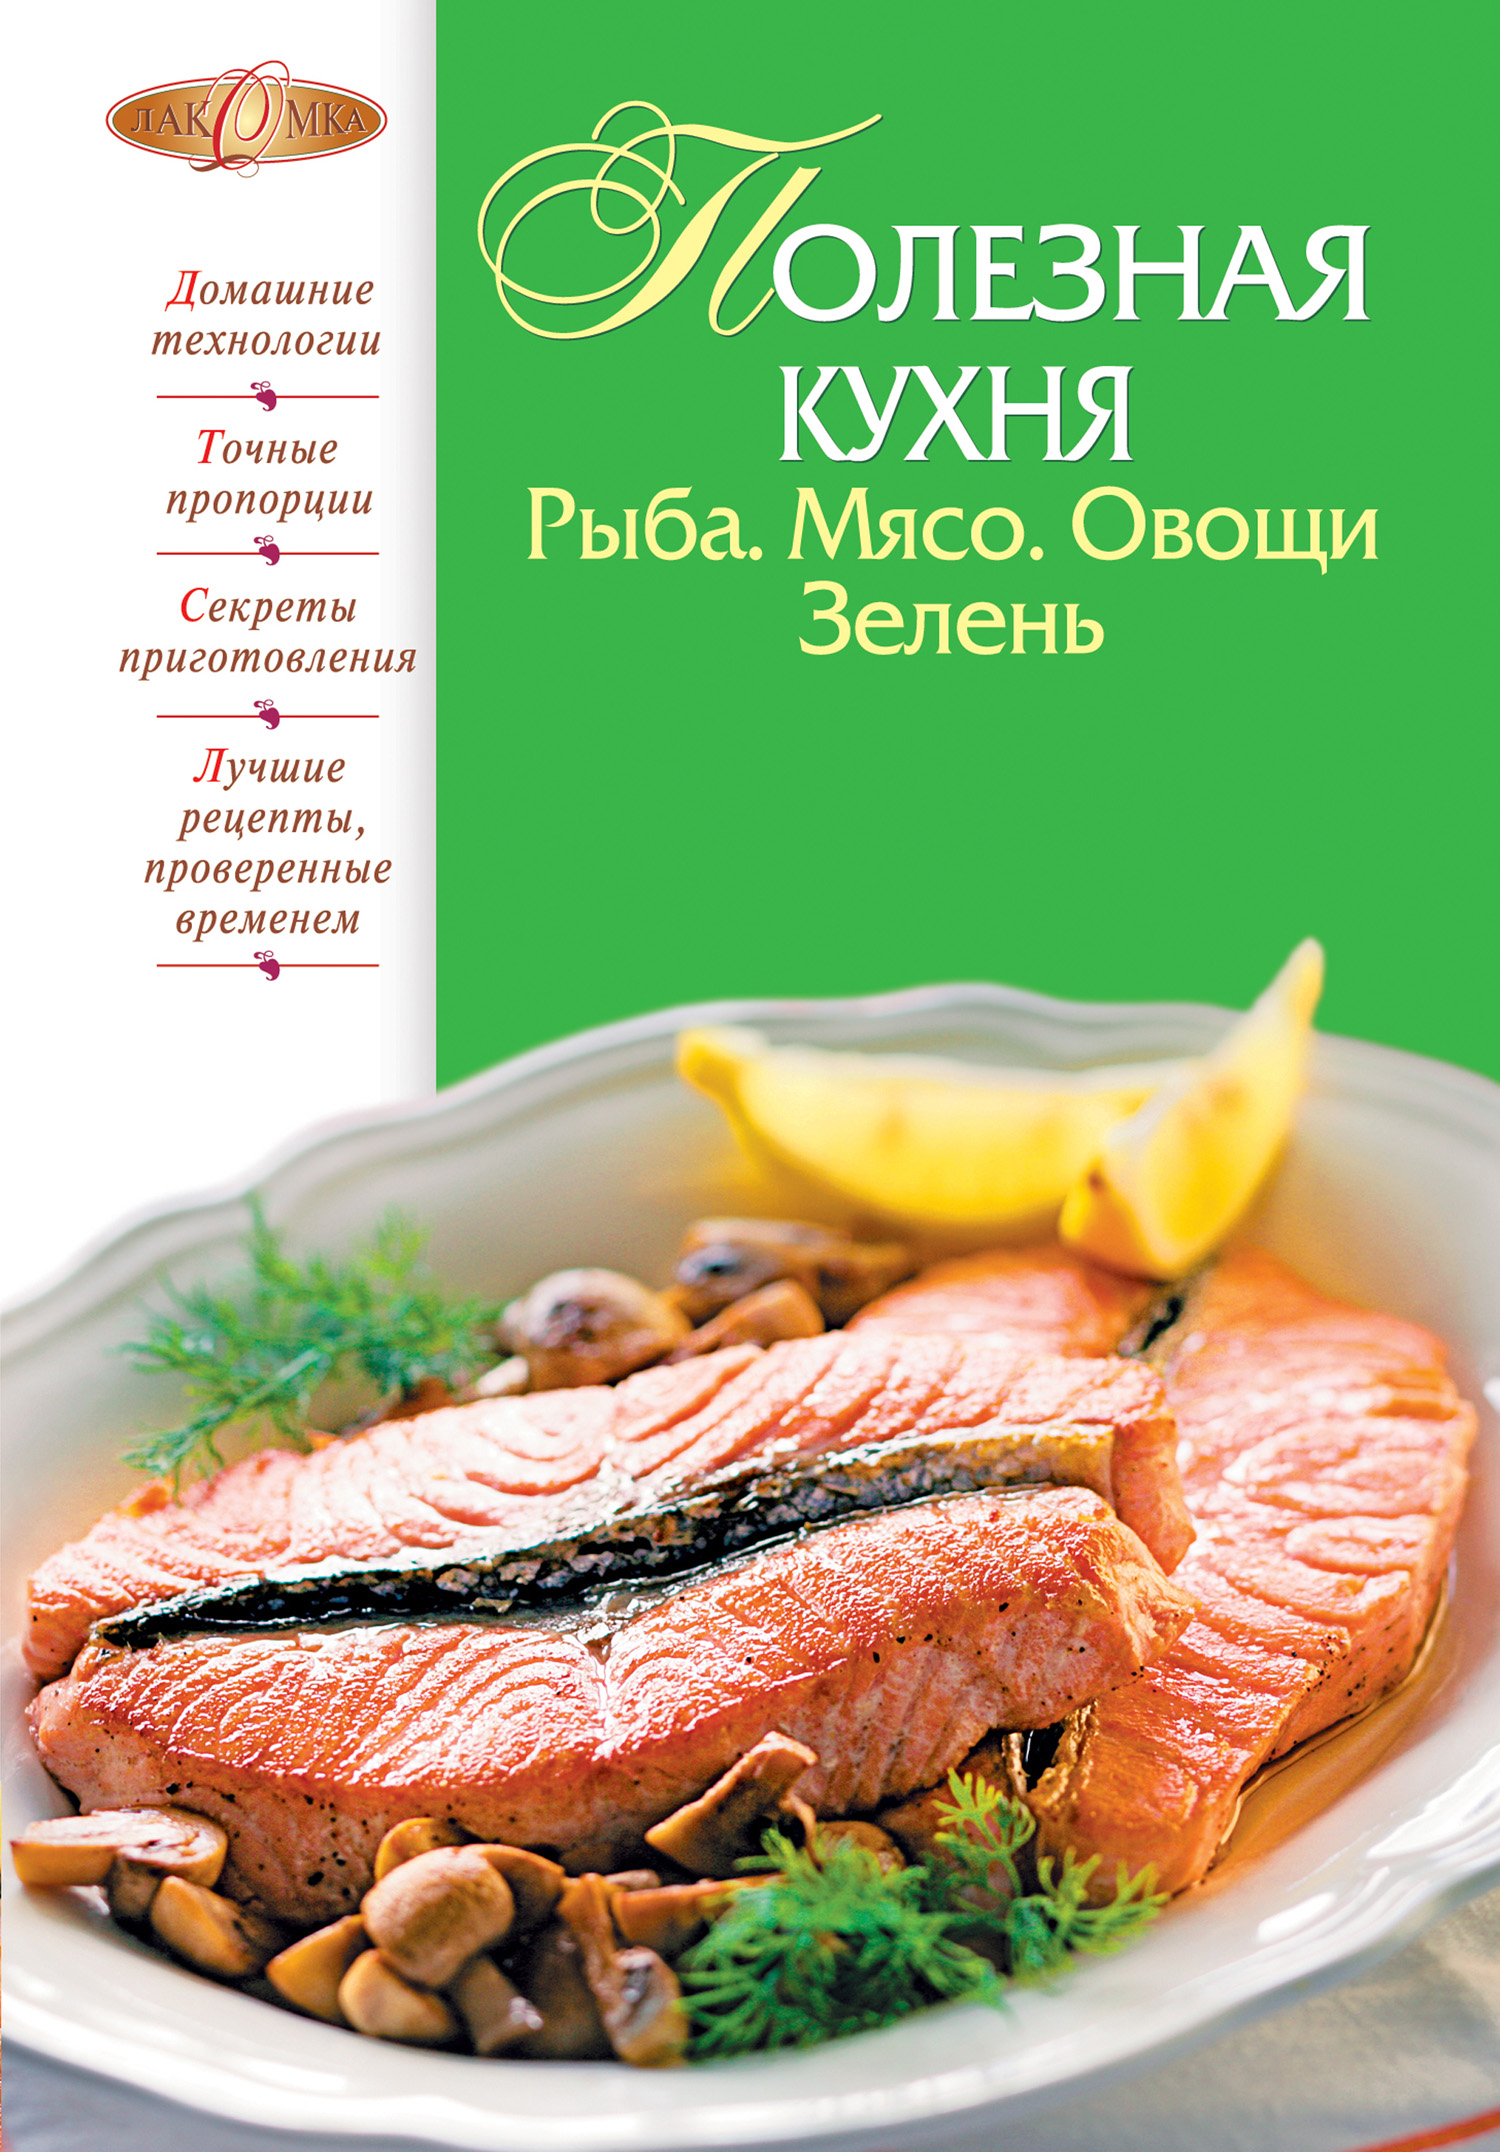 Книга Полезная кухня. Рыба. Мясо. Овощи. Зелень из серии Лакомка, созданная М. Соколовская, может относится к жанру Здоровье, Кулинария. Стоимость электронной книги Полезная кухня. Рыба. Мясо. Овощи. Зелень с идентификатором 637375 составляет 99.00 руб.